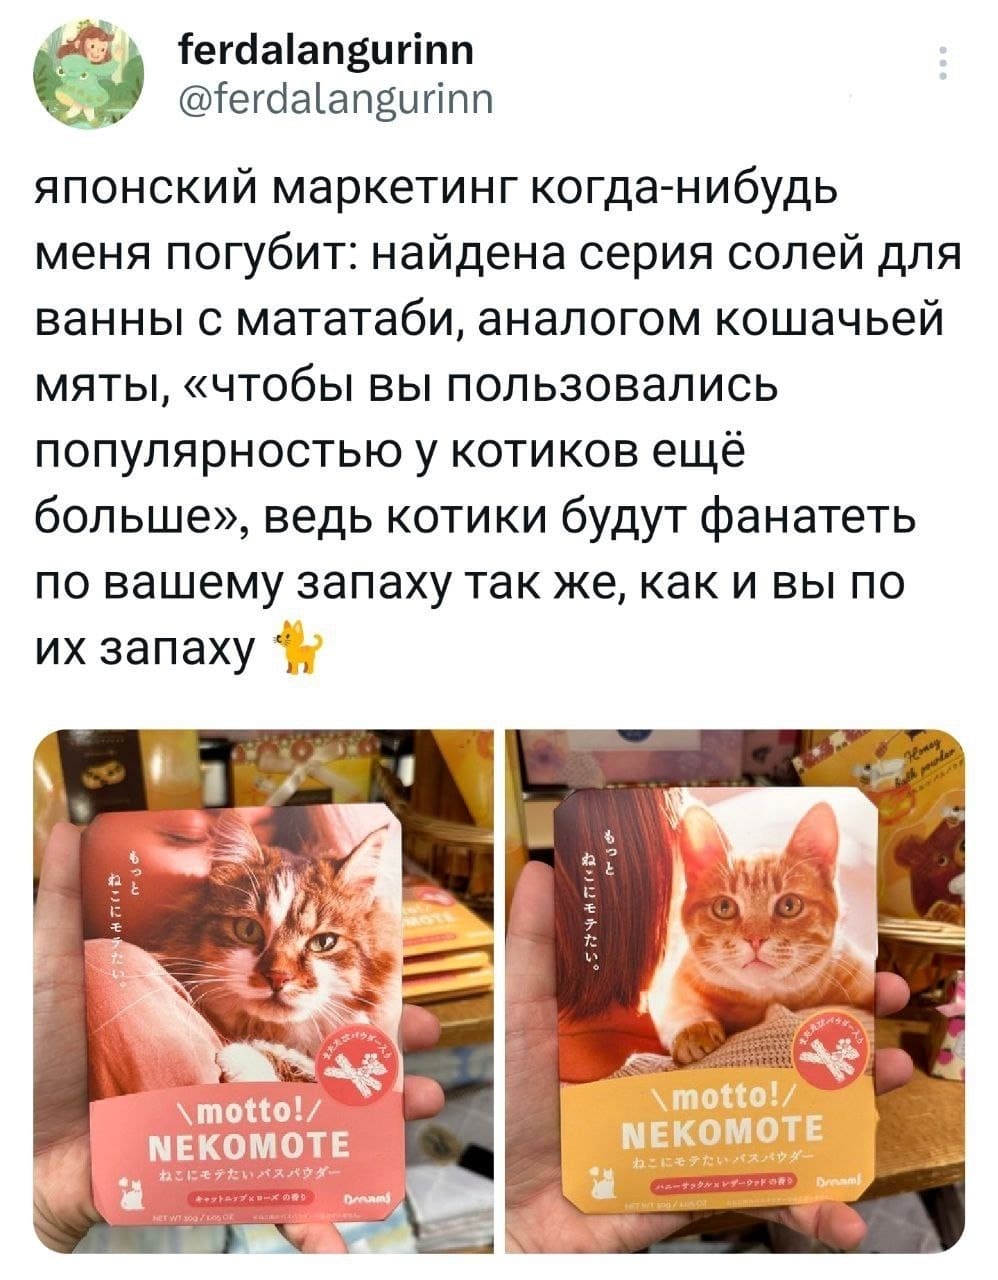 Японский маркетинг когда-нибудь меня погубит: найдена серия солей для ванны с мататаби, аналогом кошачьей мяты, «чтобы вы пользовались популярностью у котиков ещё больше», ведь котики будут фанатеть по вашему запаху так же, как и вы по их запаху.